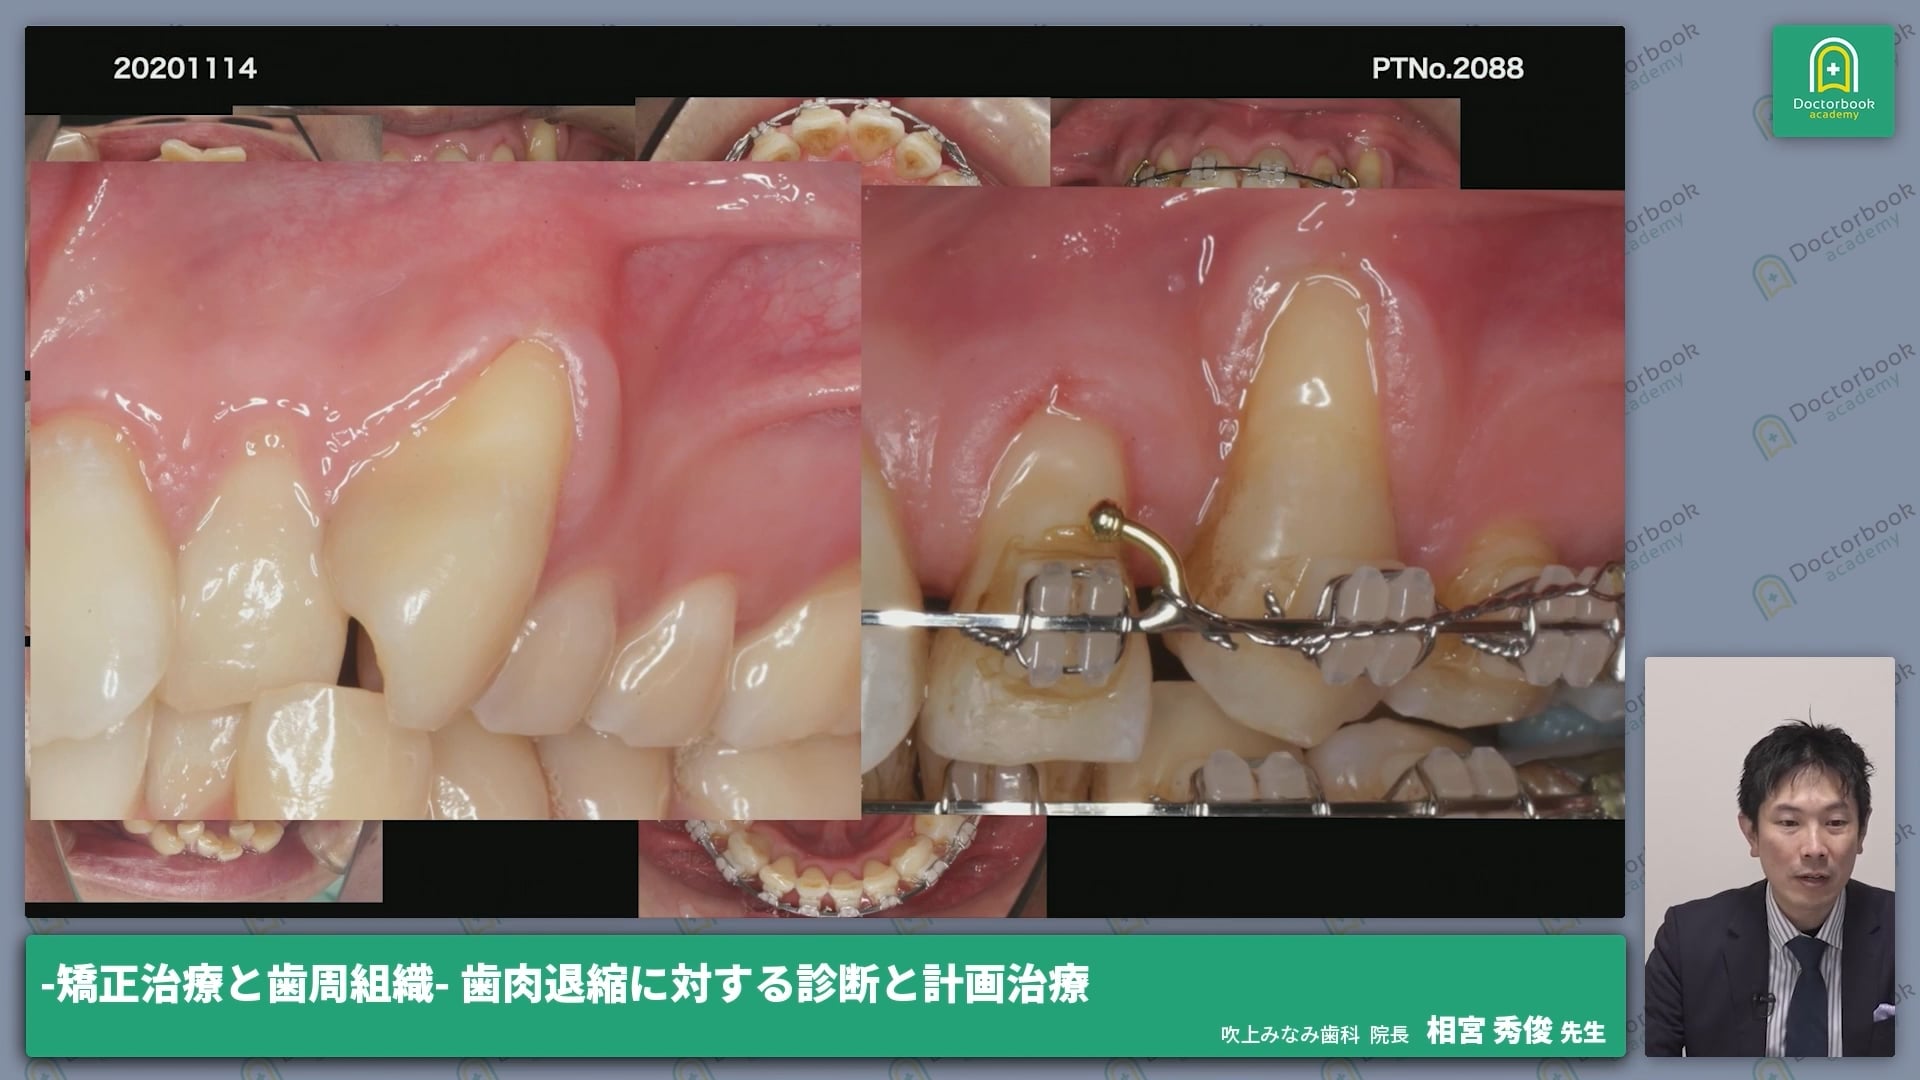 矯正治療中に歯肉退縮が認められている症例・歯肉移植法「VISTA」の外科手術│相宮 秀俊先生 #1